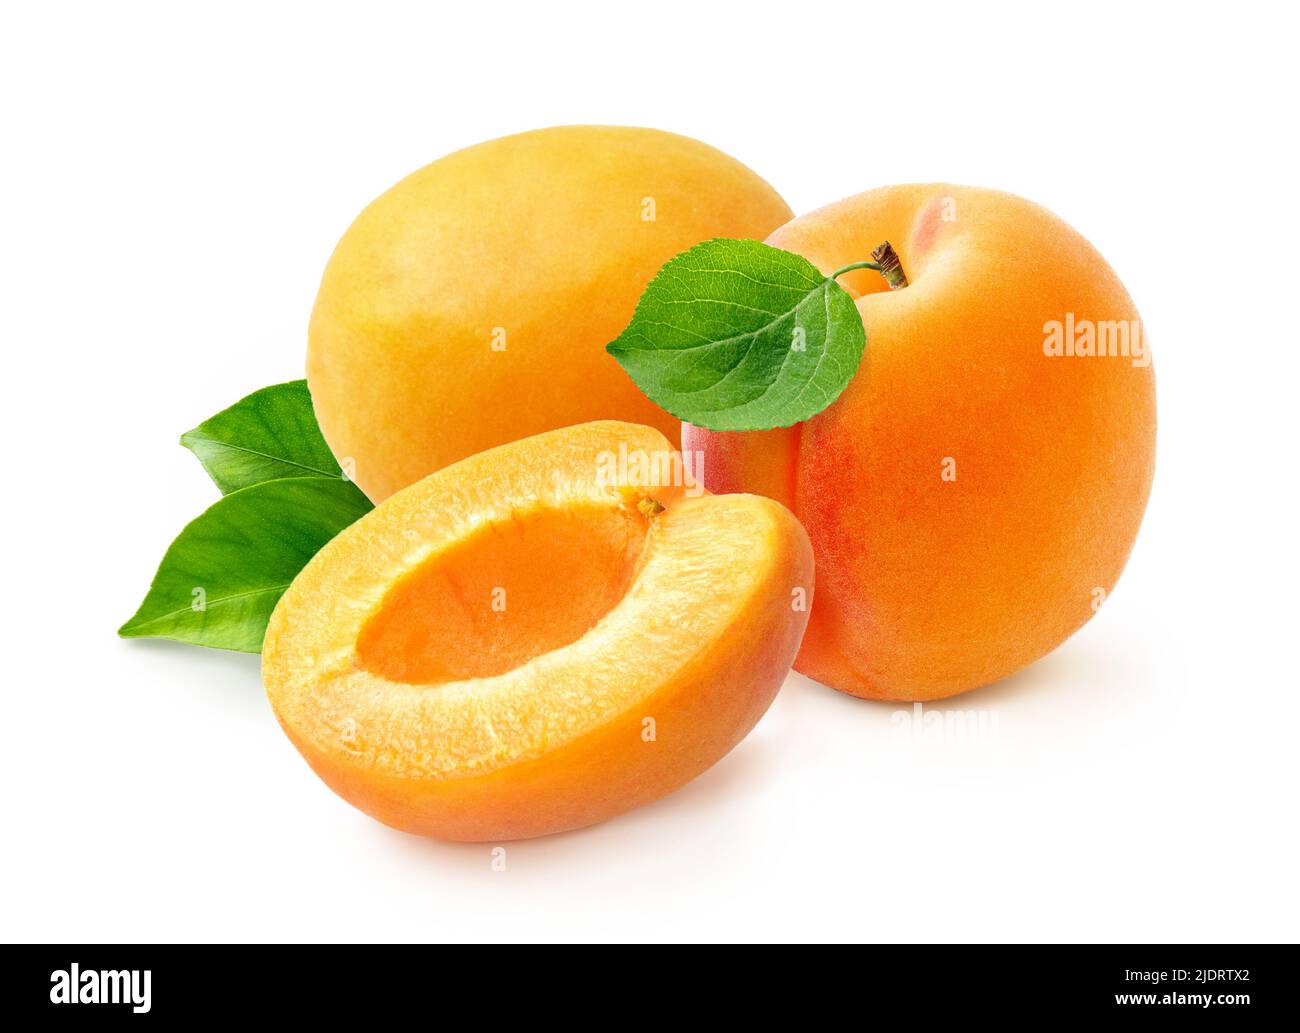 Frutti di albicocca con metà di albicocca e nocciolo di albicocca isolato su sfondo bianco. Foto Stock